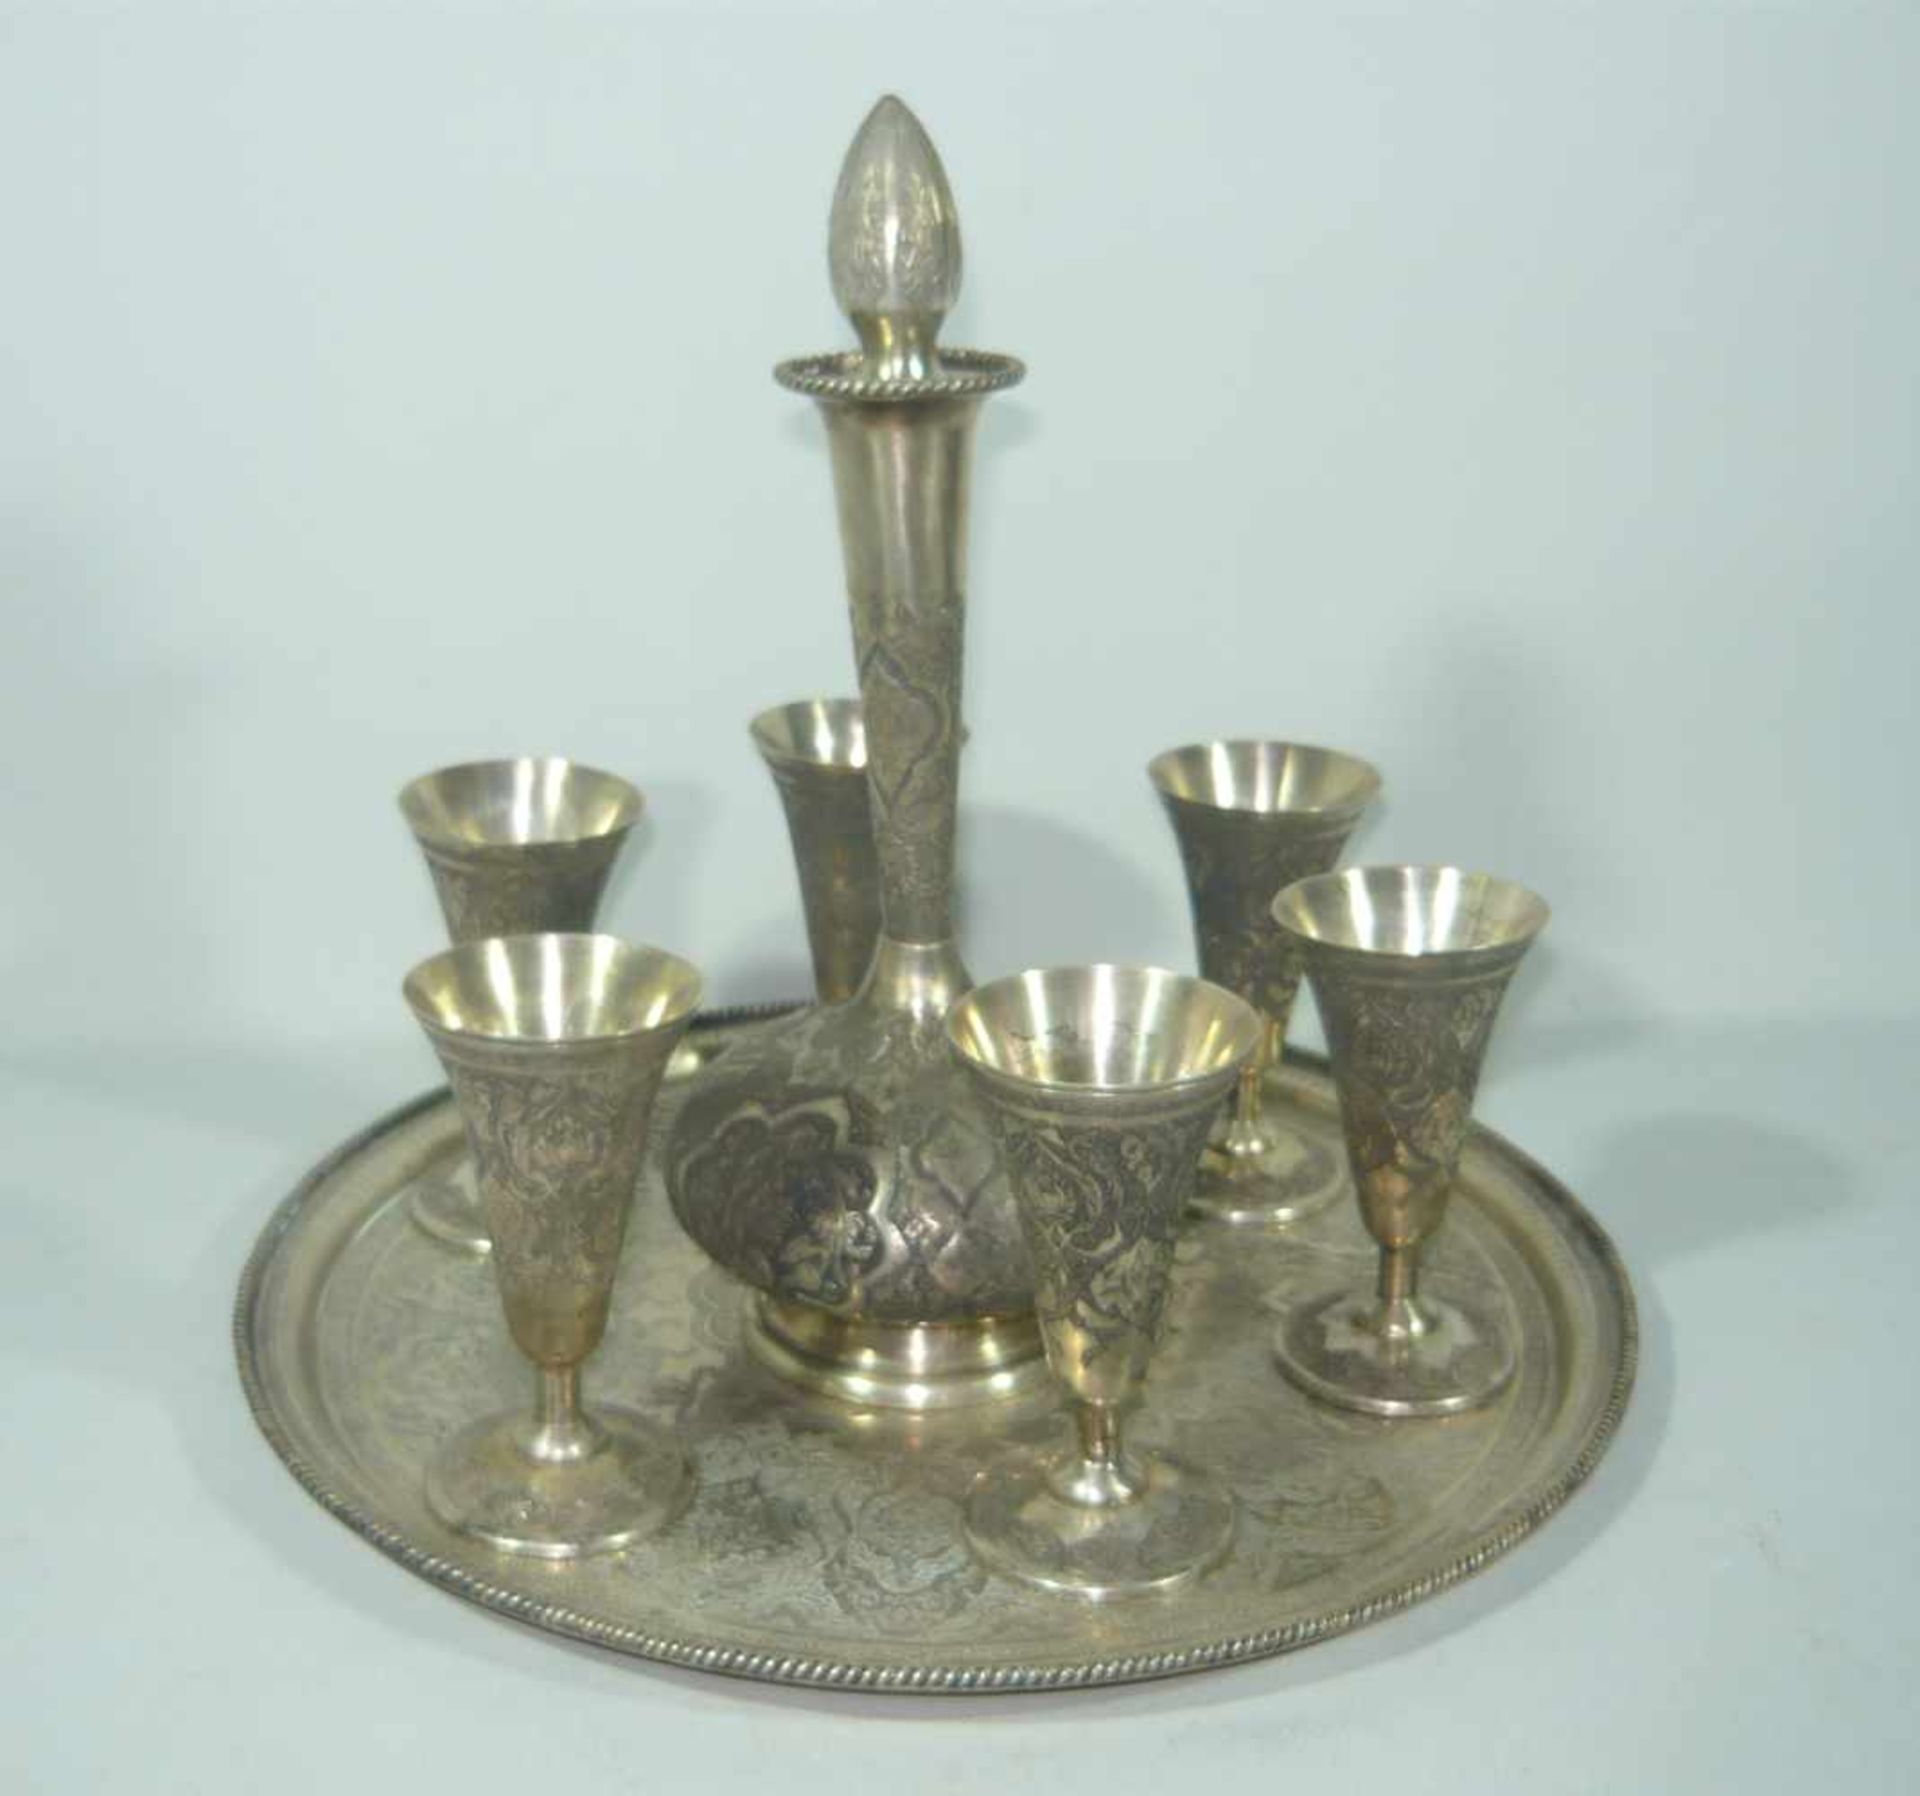 Set bestehend aus Karaffe mit Stöpsel, sechs Bechern und rundem Tablett. Silber. Isfahan, Persien.